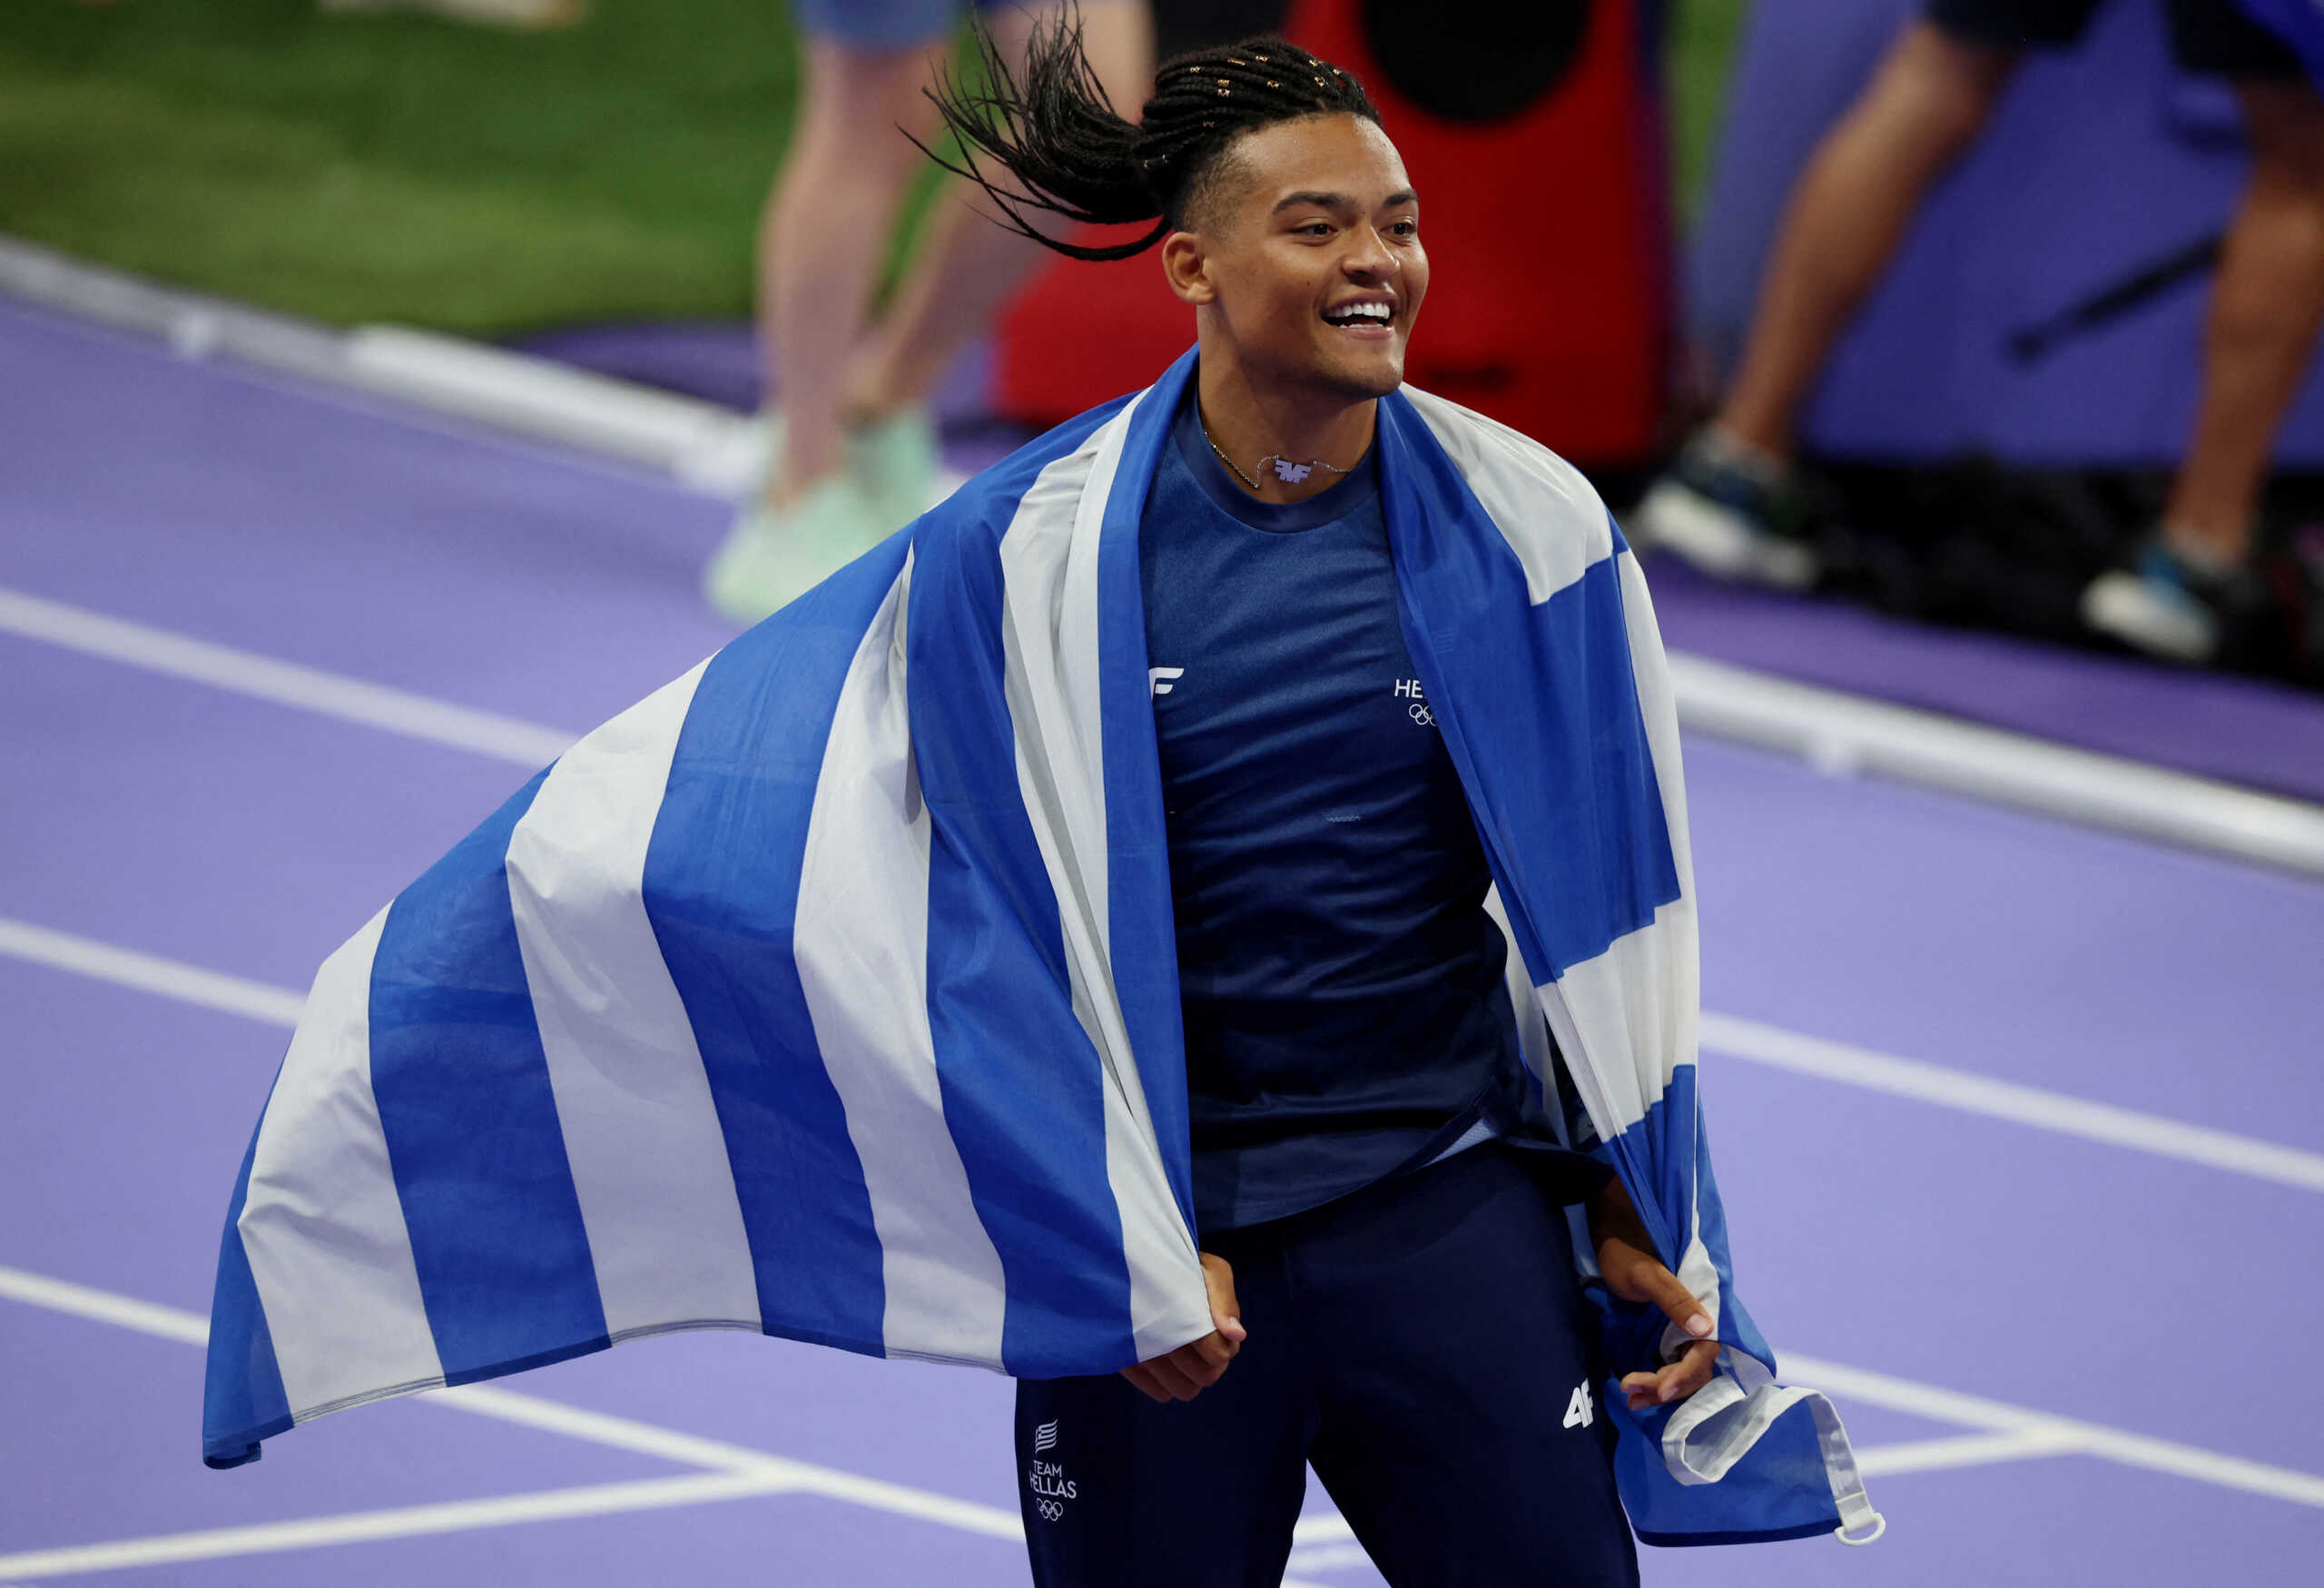 Ο Εμμανουήλ Καραλής έφερε το 6ο μετάλλιο της Ελλάδας στους Ολυμπιακούς Αγώνες – Ημέρες Ατλάντα ζει η ελληνική αποστολή